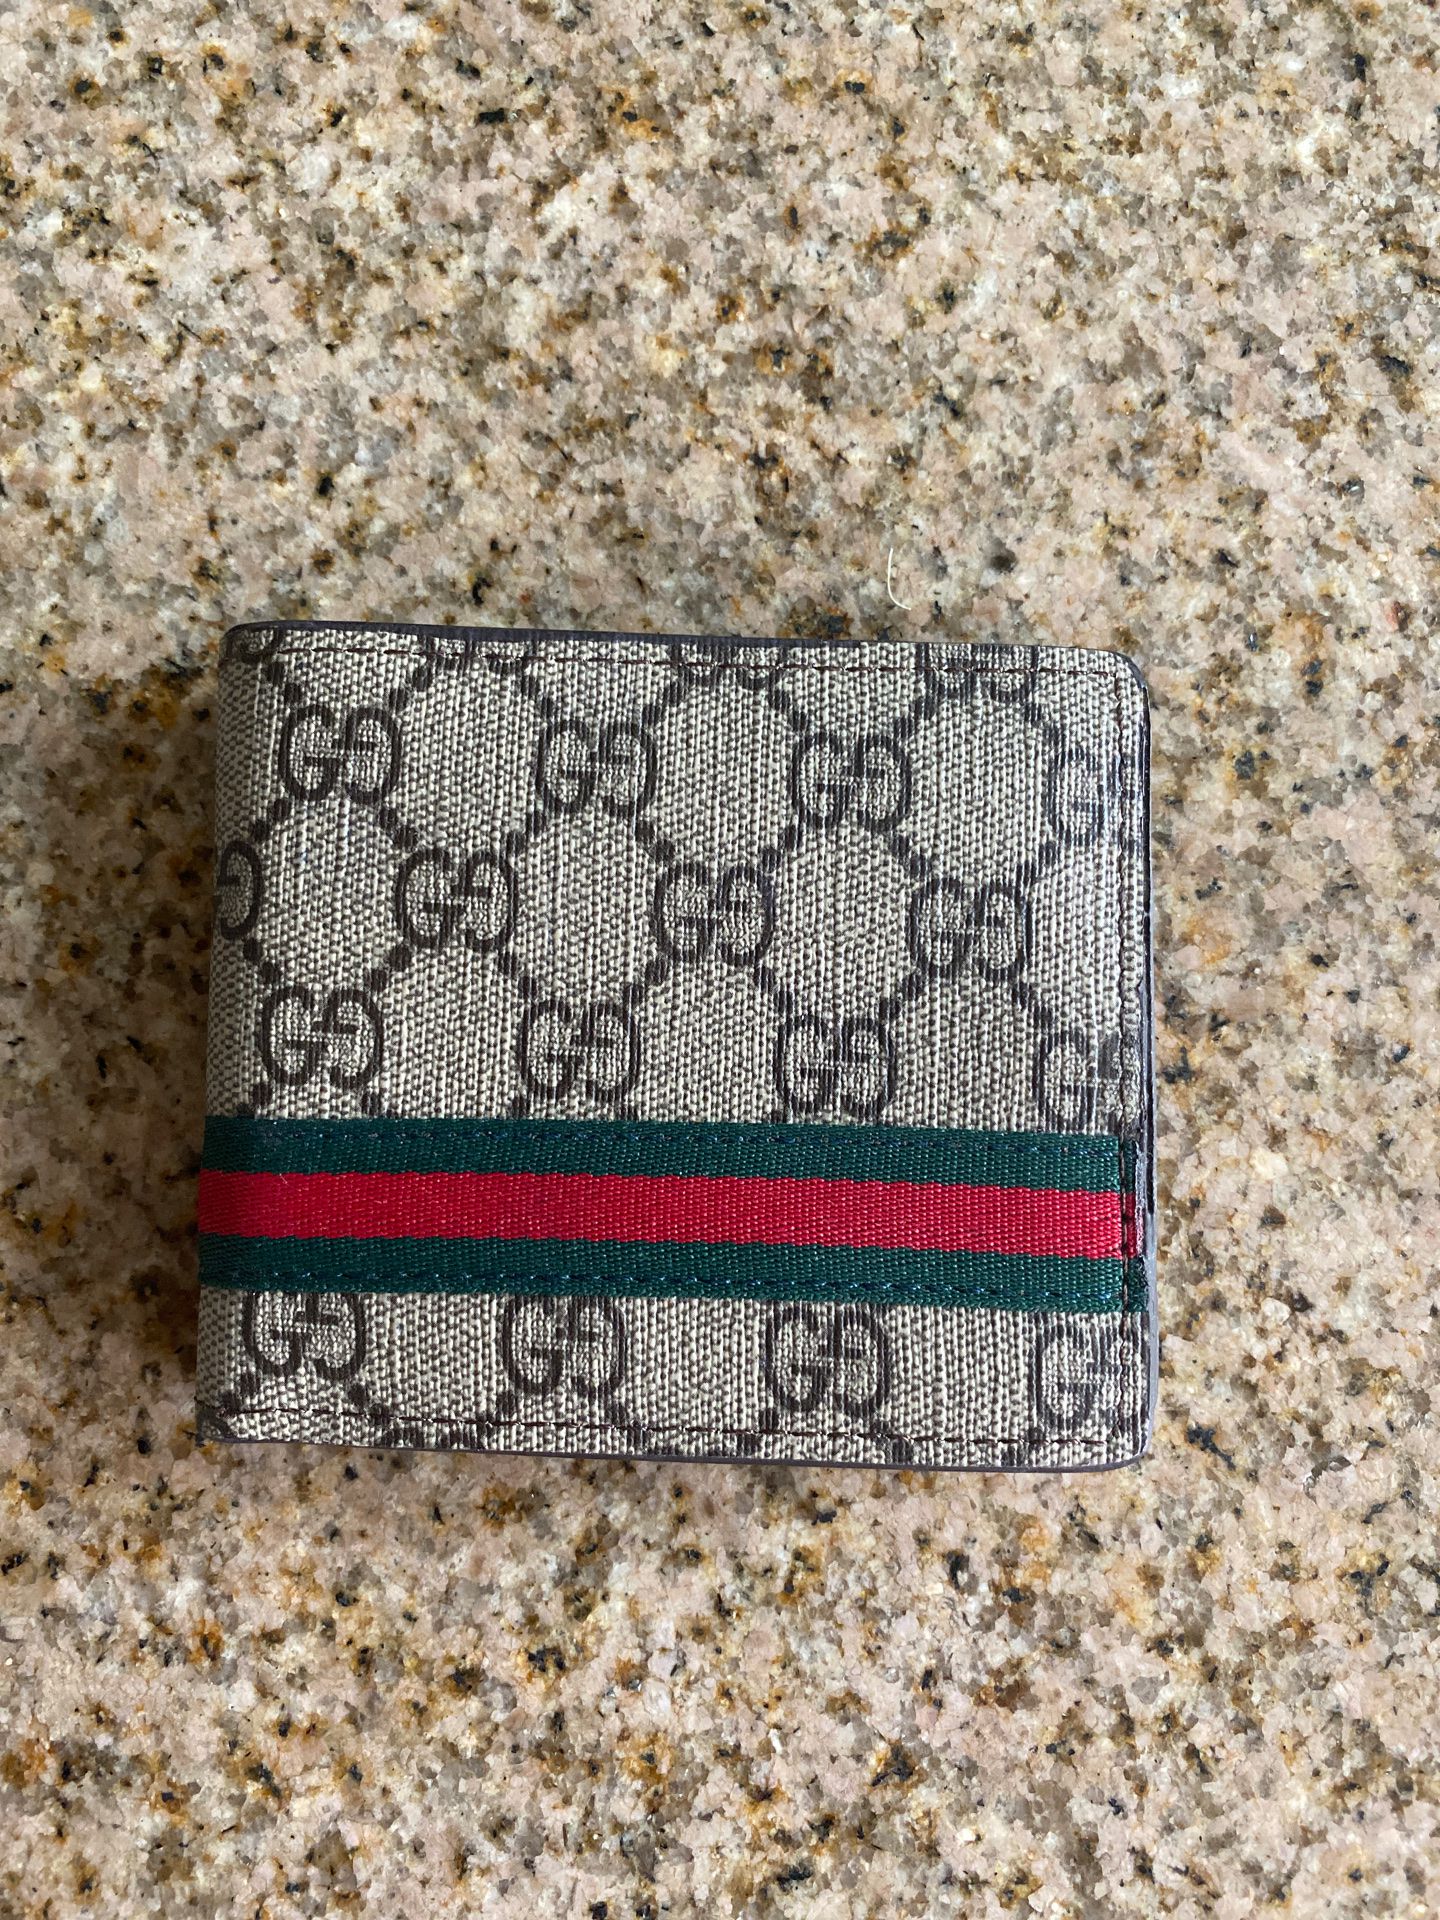 Gucci wallet